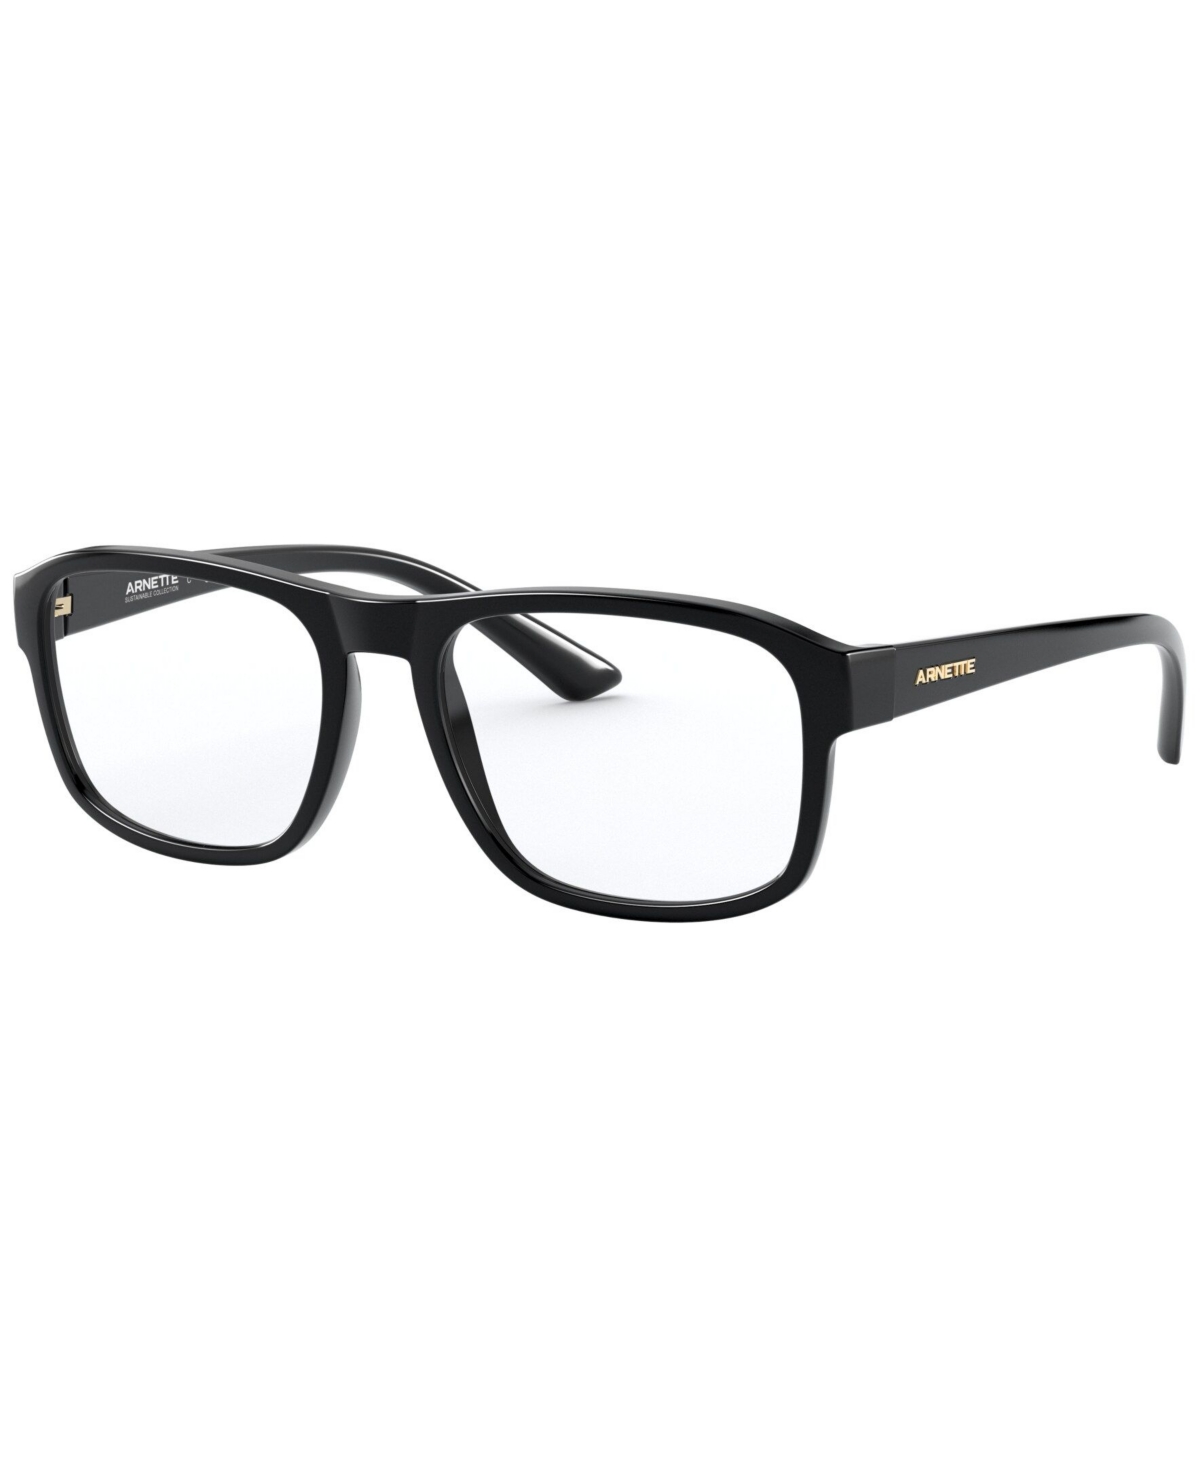 Arnette AN7176 Men's Oval Eyeglasses